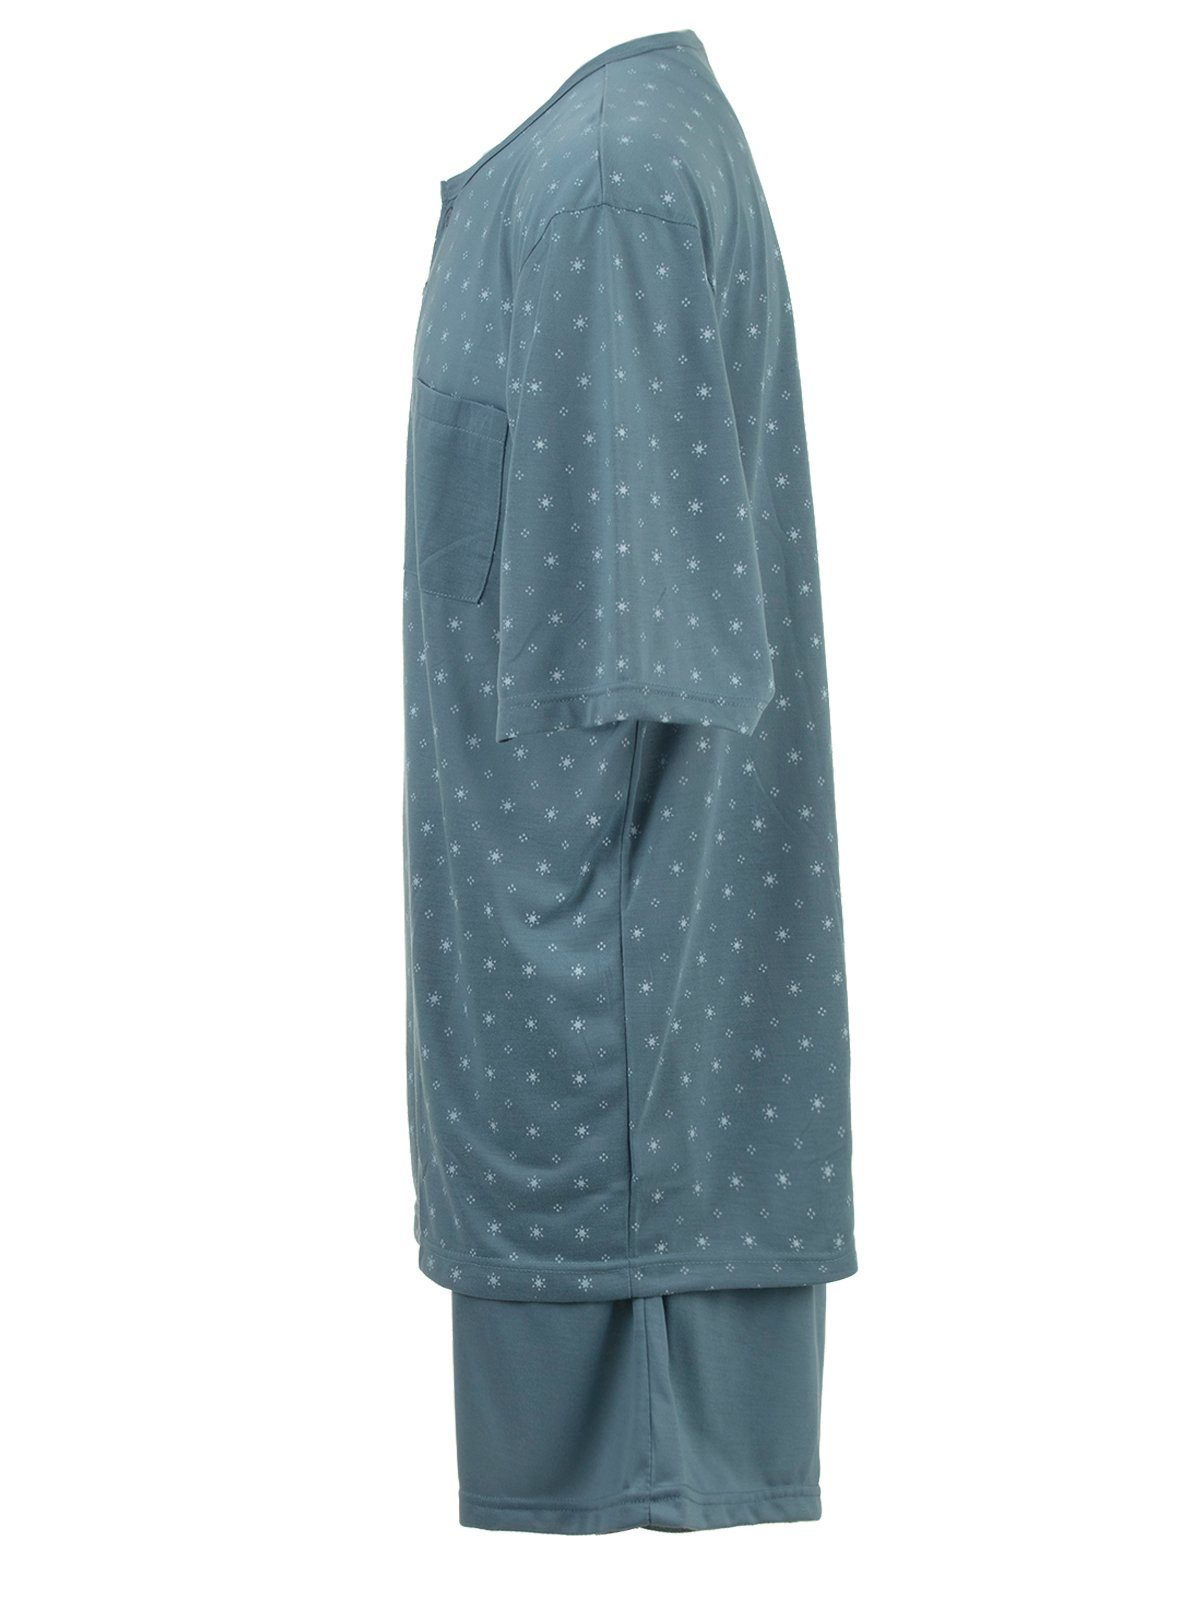 Schlafanzug - Set Shorty Lucky Sonne Pyjama grün